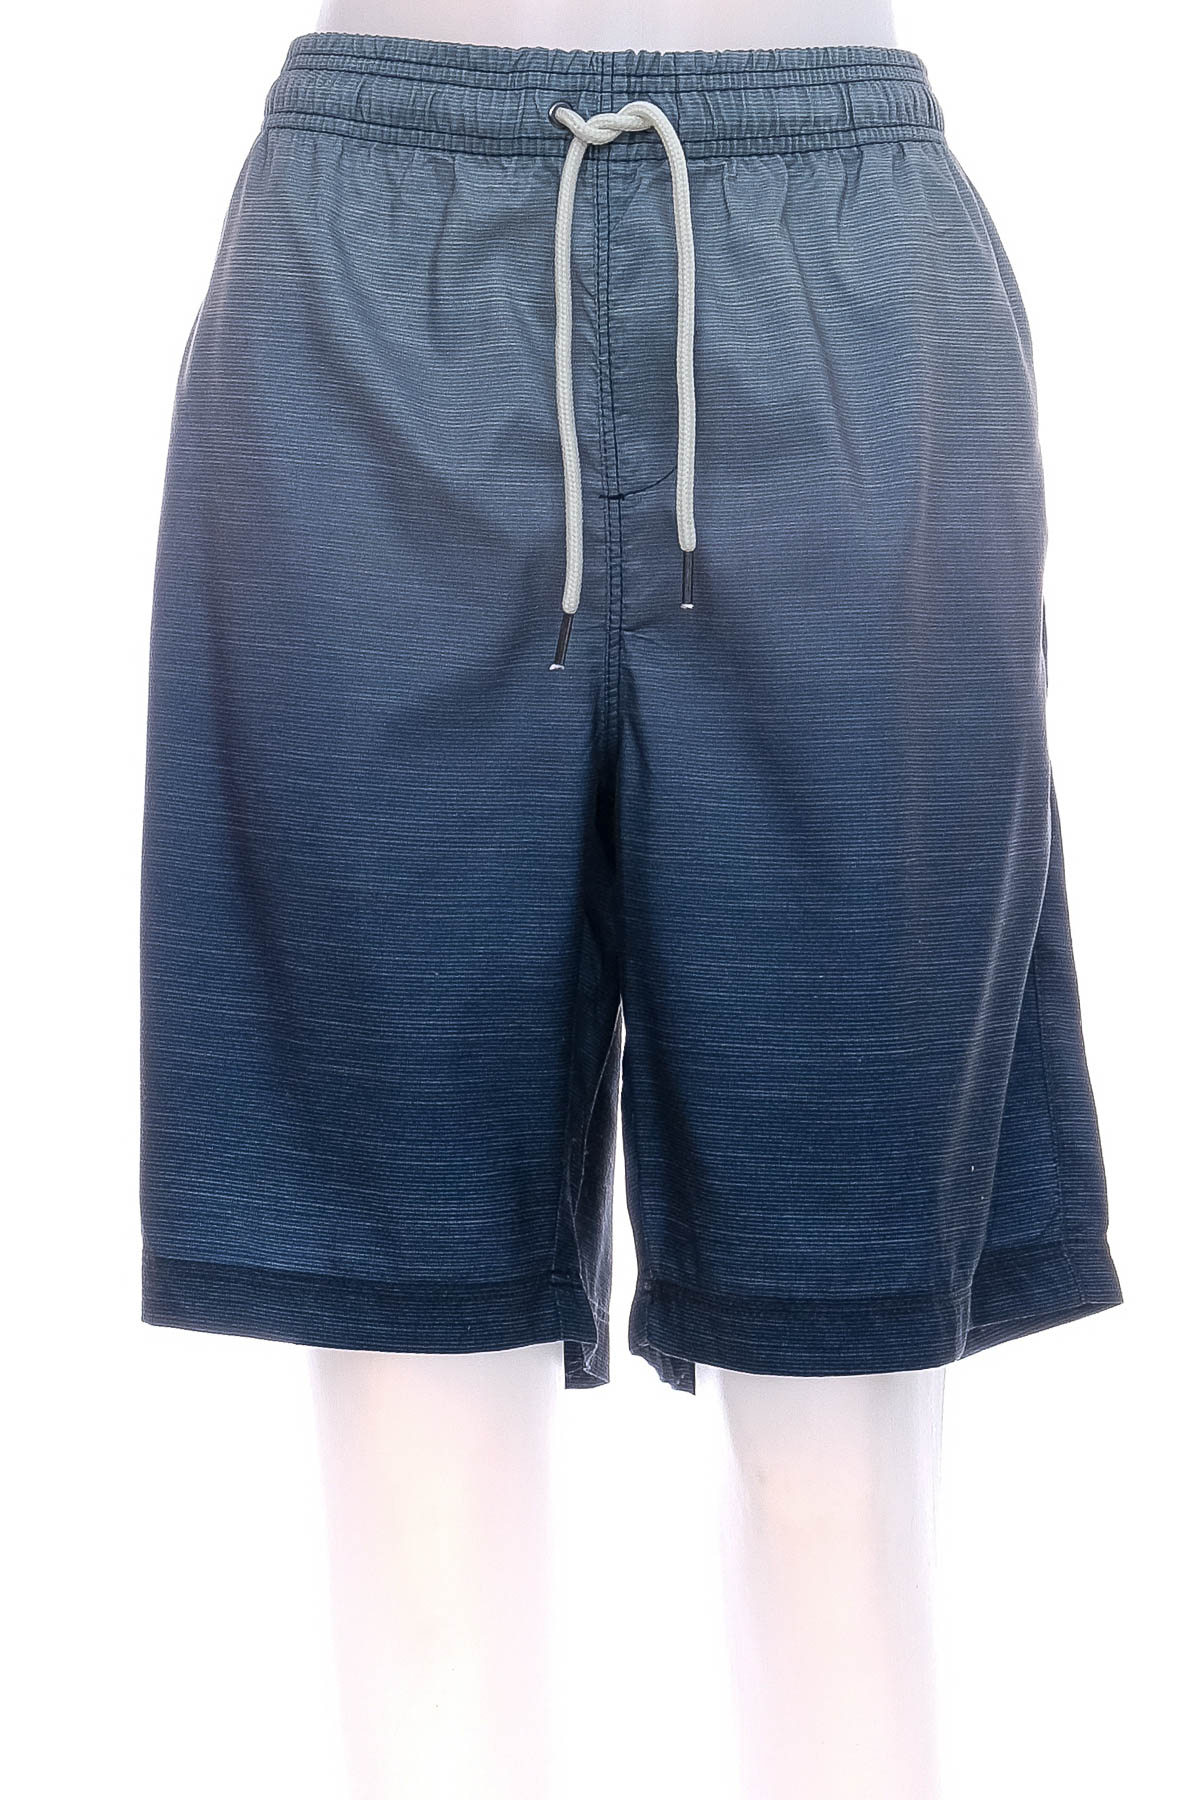 Men's shorts - Anko - 0